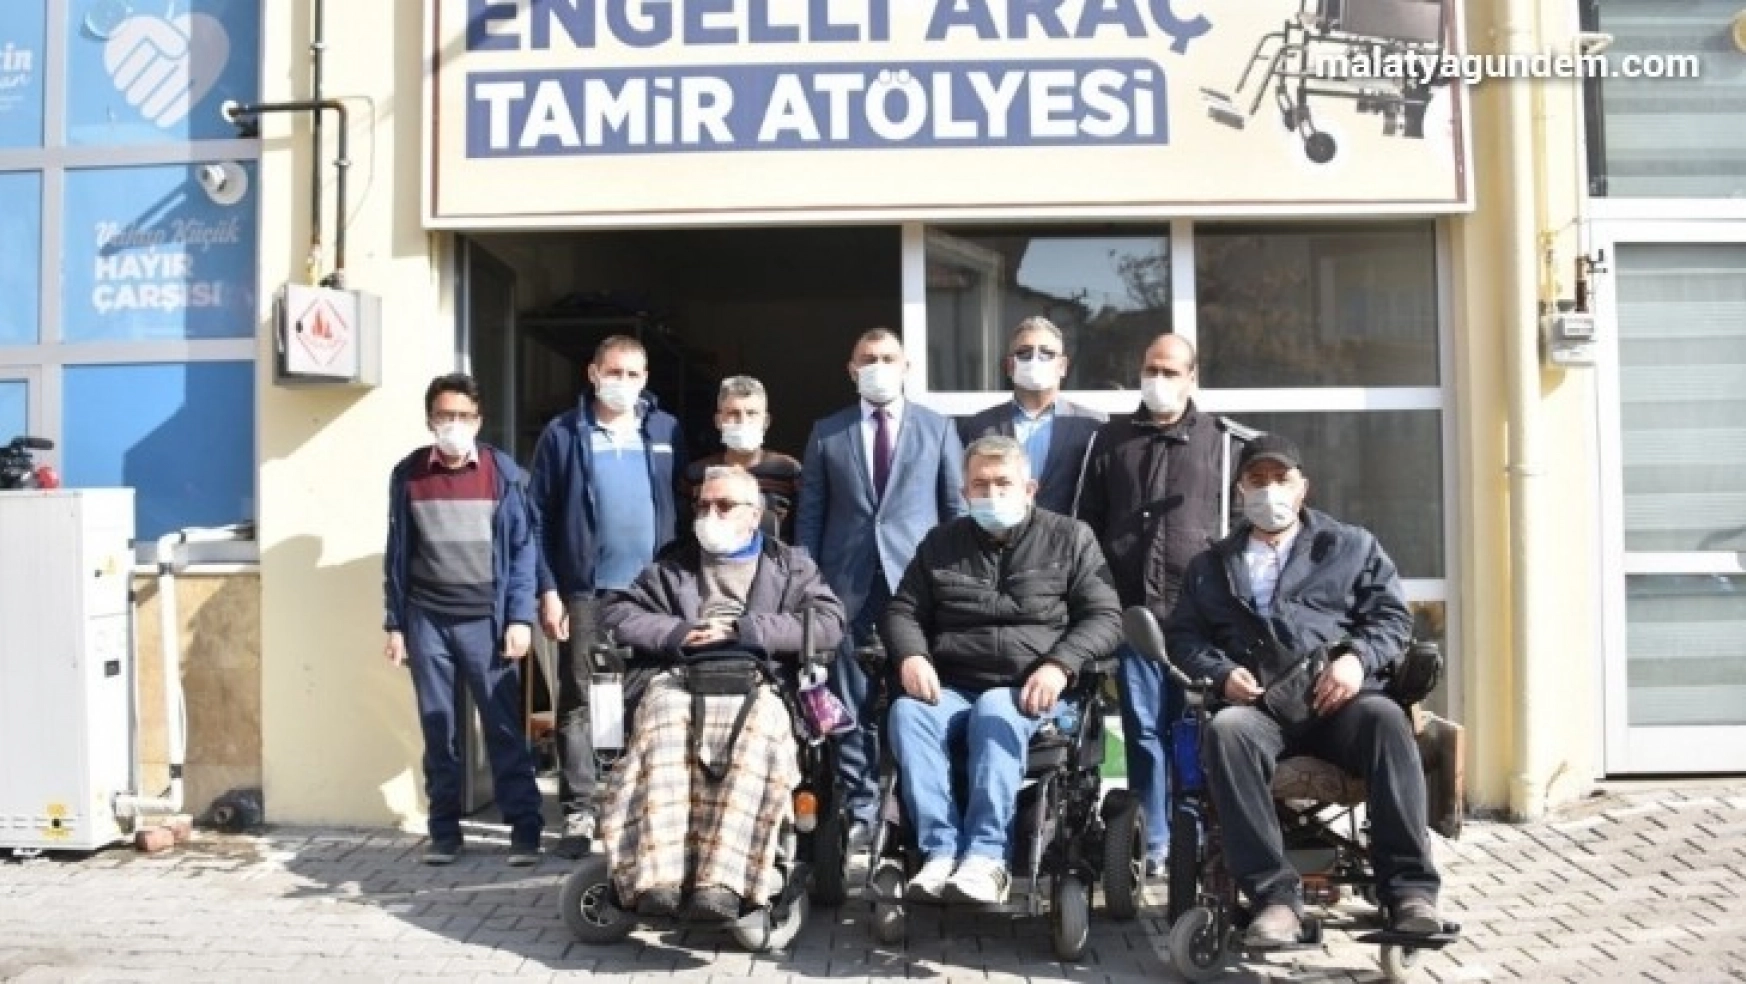 Malatya Büyükşehir akülü engelli araçların tamirini yapıyor